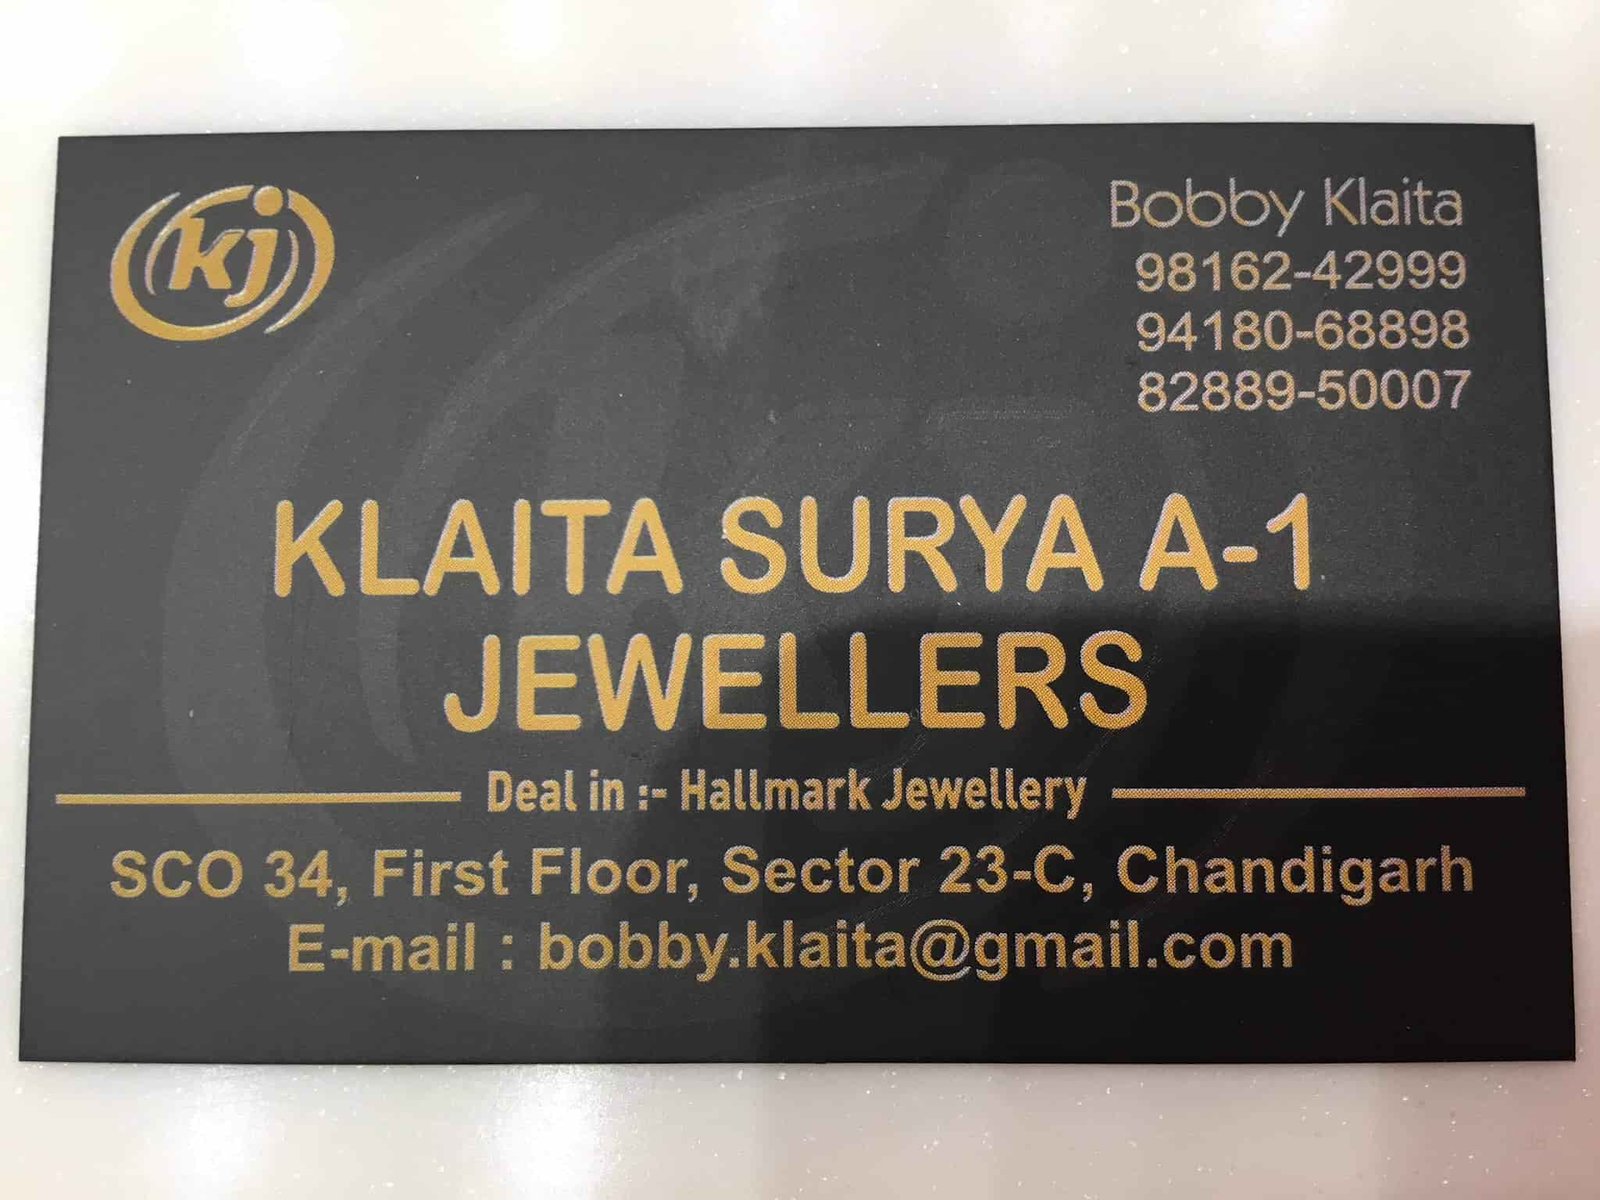 Klaita Surya Jewellers